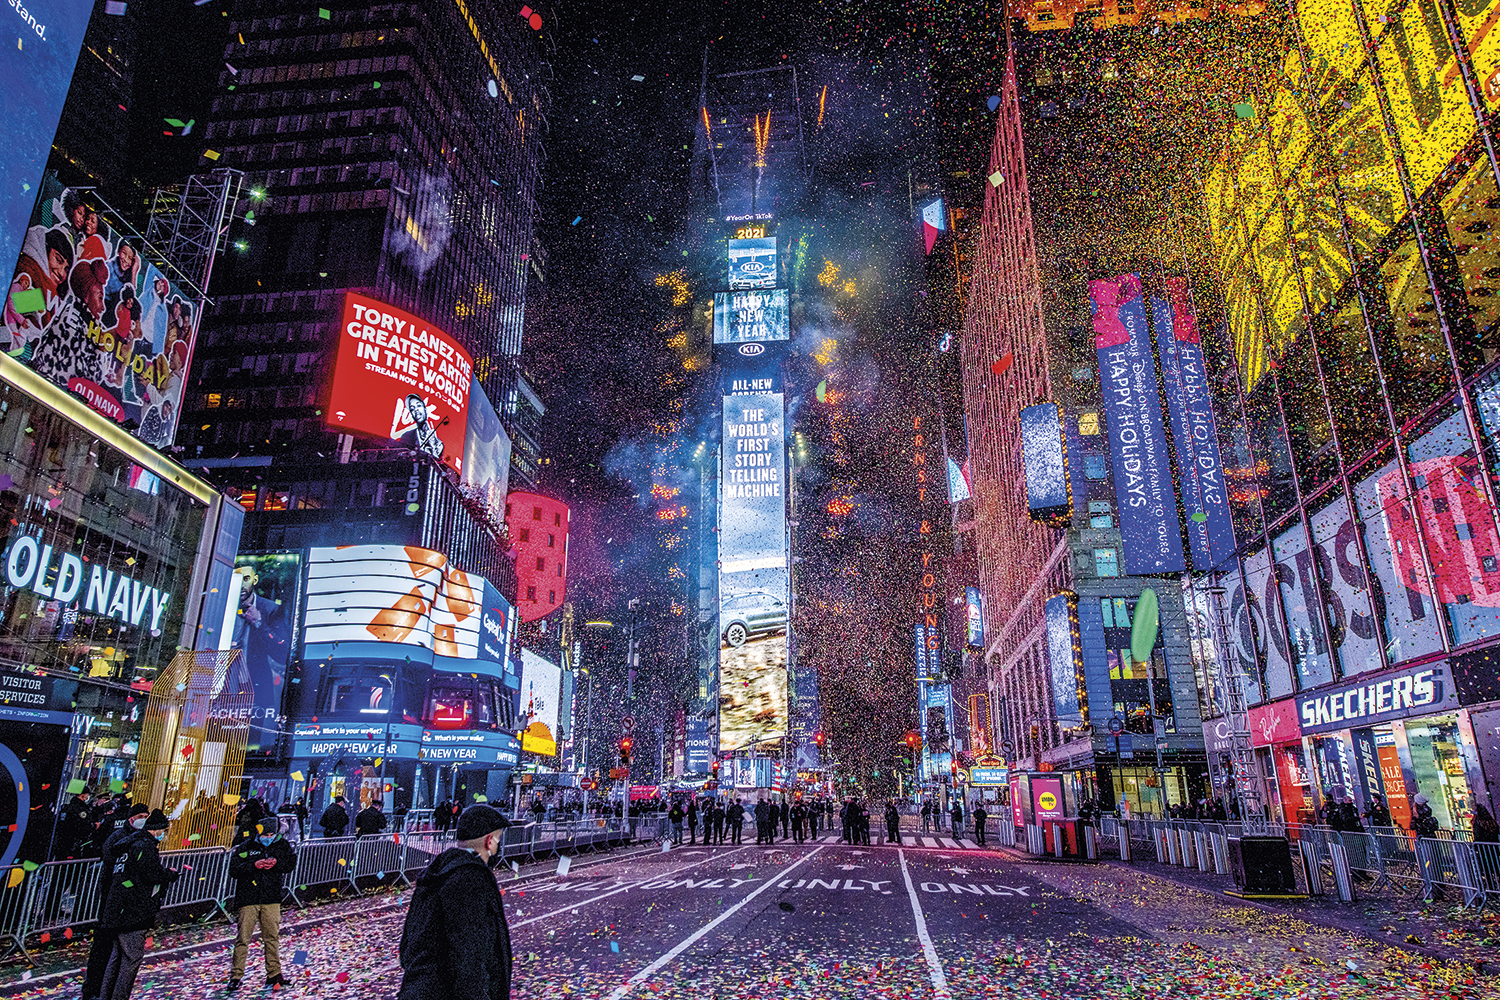 NOVA YORK, 2021 - Solidão de inverno: a prefeitura suspendeu a tradicional comemoração no ano 1 da pandemia -